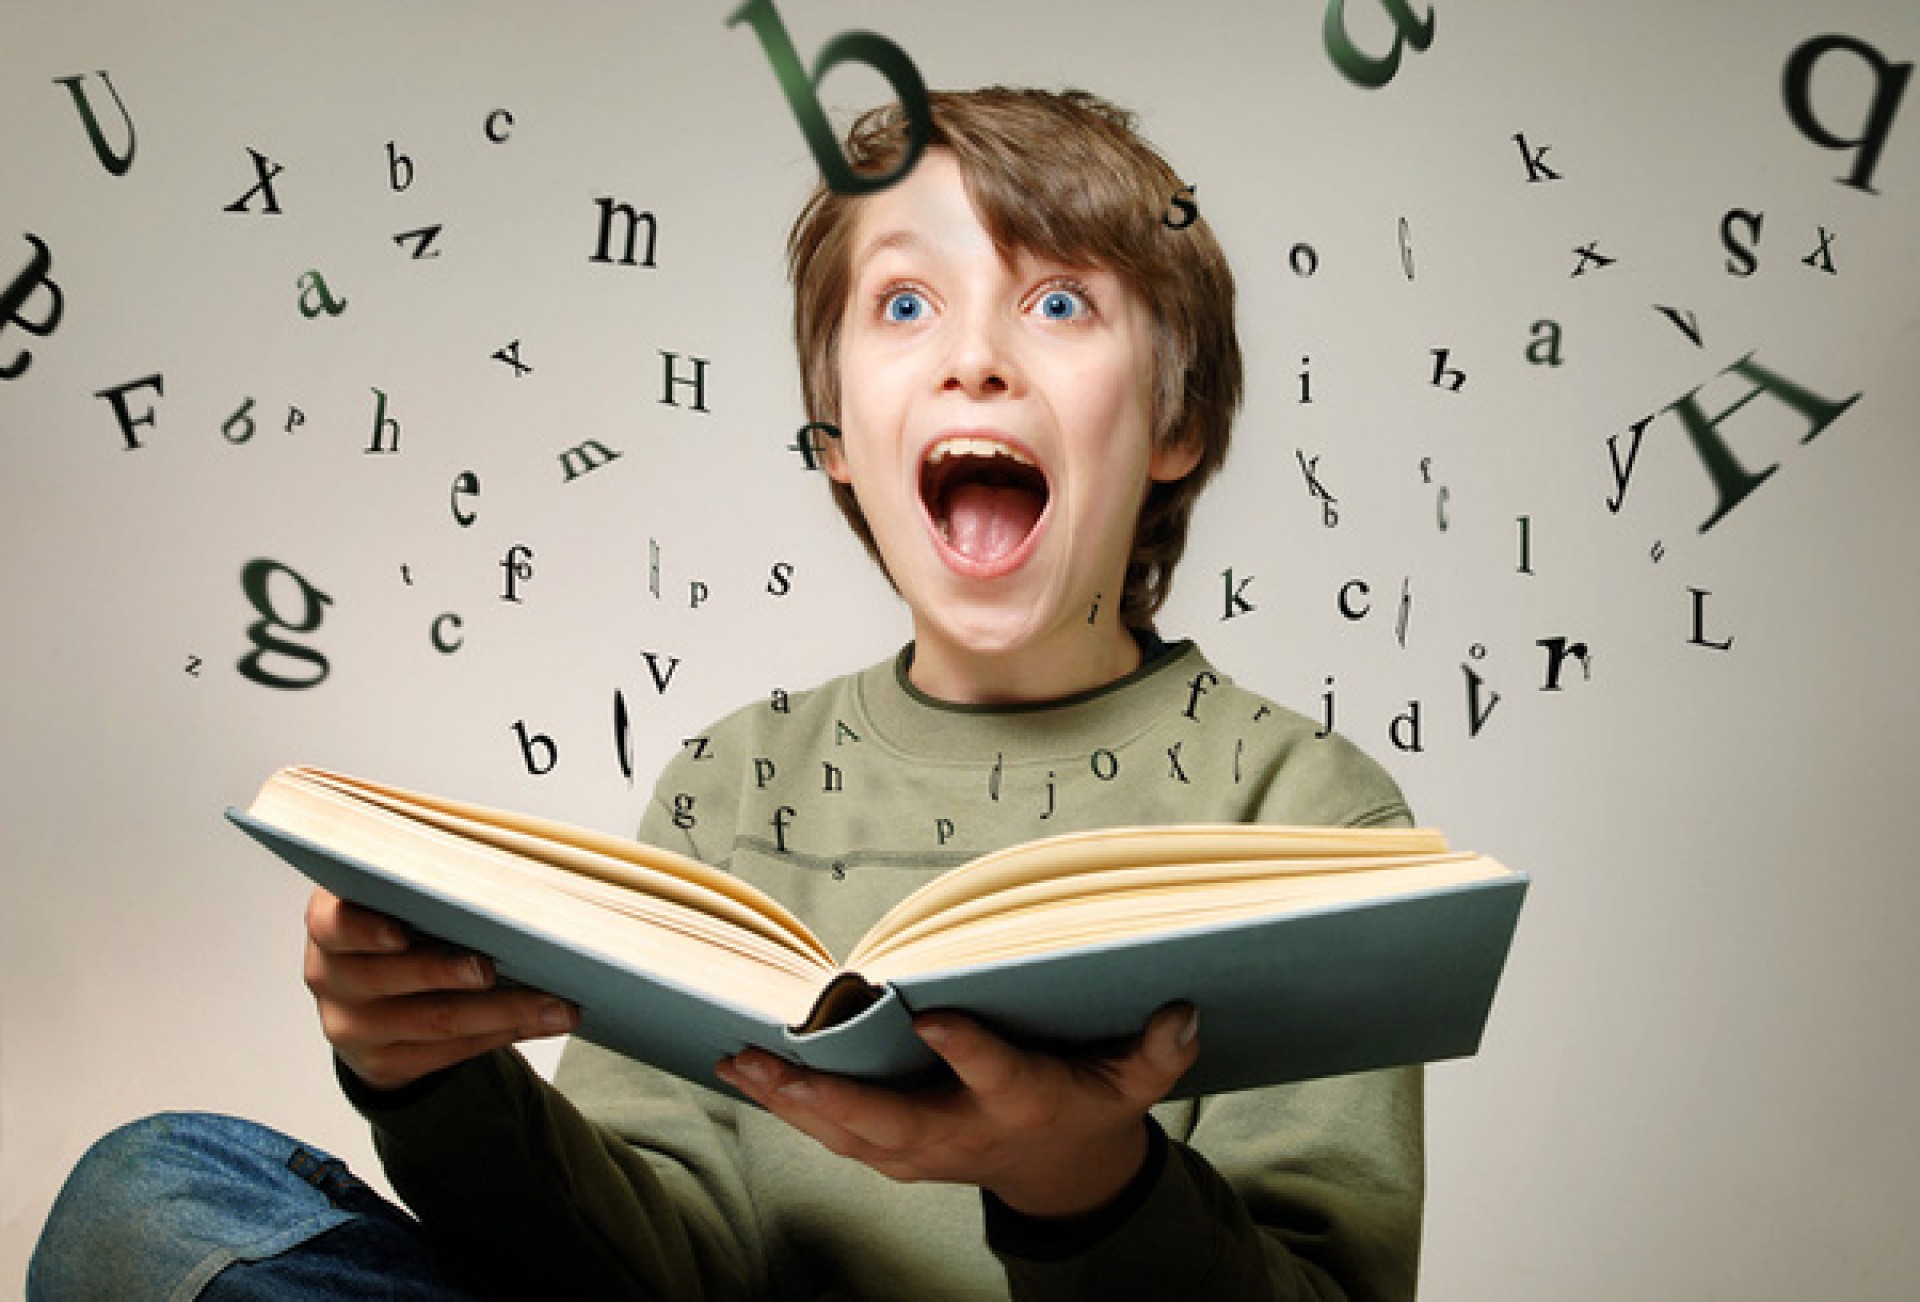 Học từ vựng tiếng anh – tại sao nên sử dụng từ điển anh - anh?